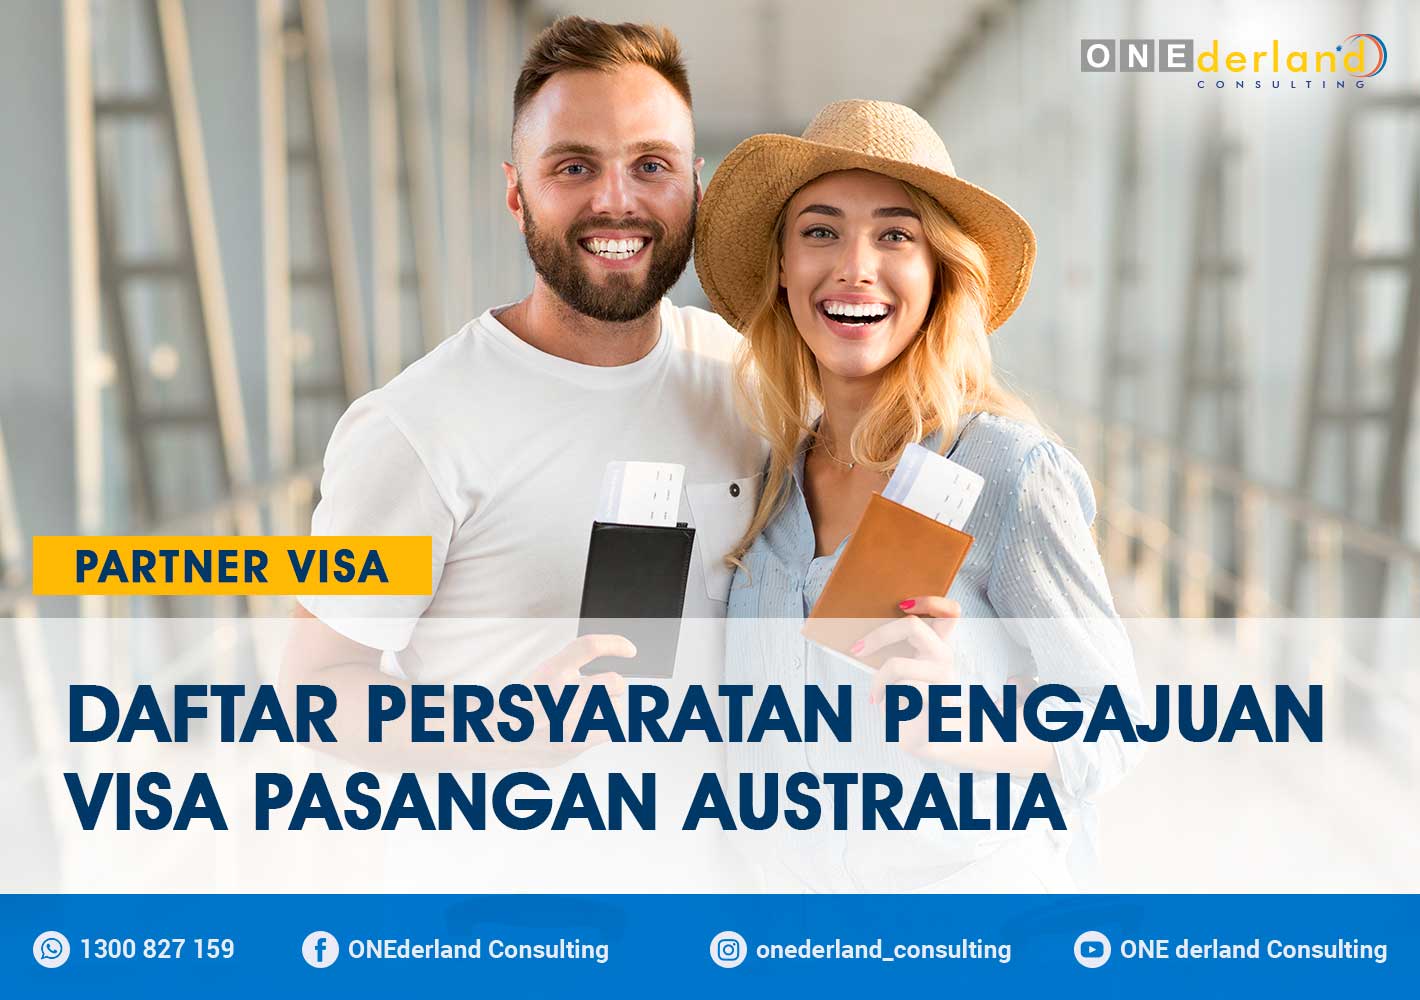 Daftar Persyaratan Pengajuan Visa Pasangan Australia